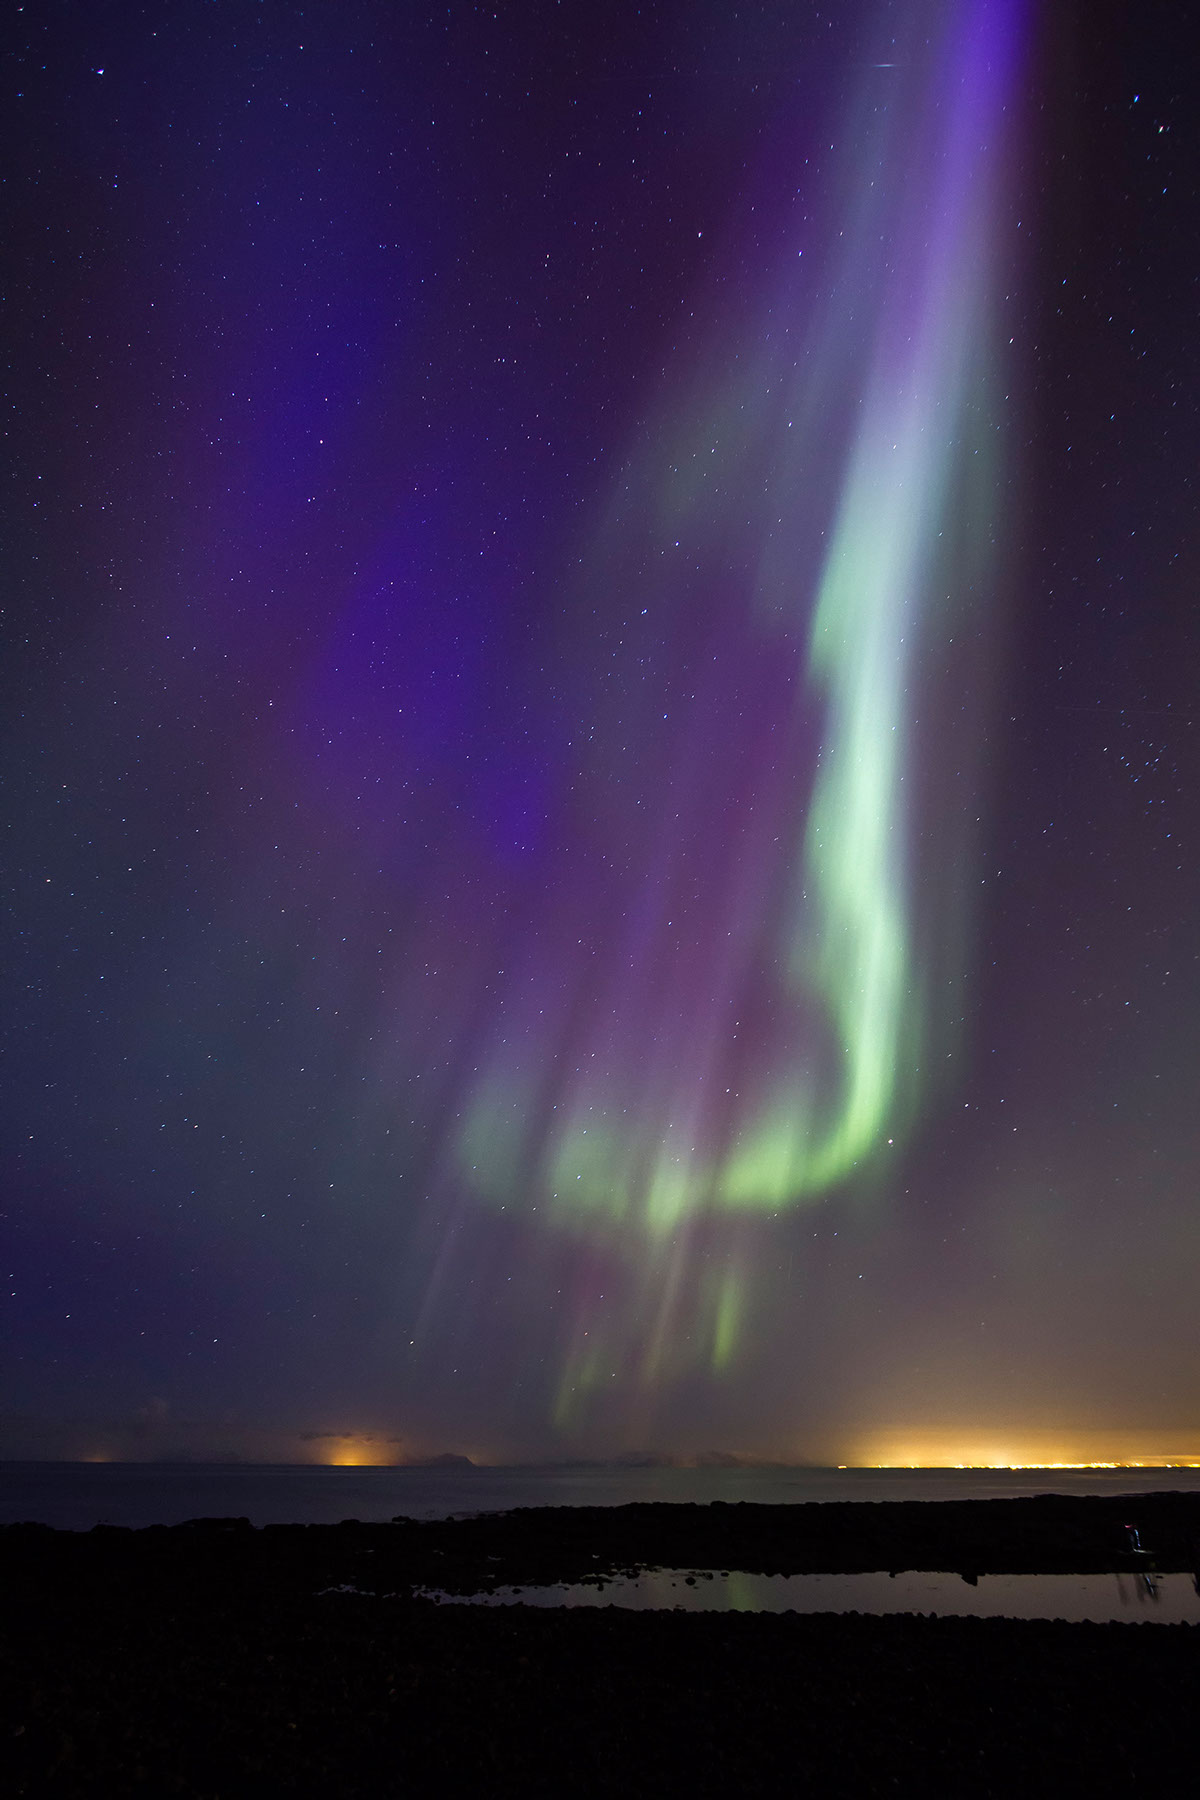 iceland Northern Lights Aurora Borealis Show Kp index aurora solar storm magnetic storm Reykjanes aurores boréales Island islande natural Norðurljós Landscape